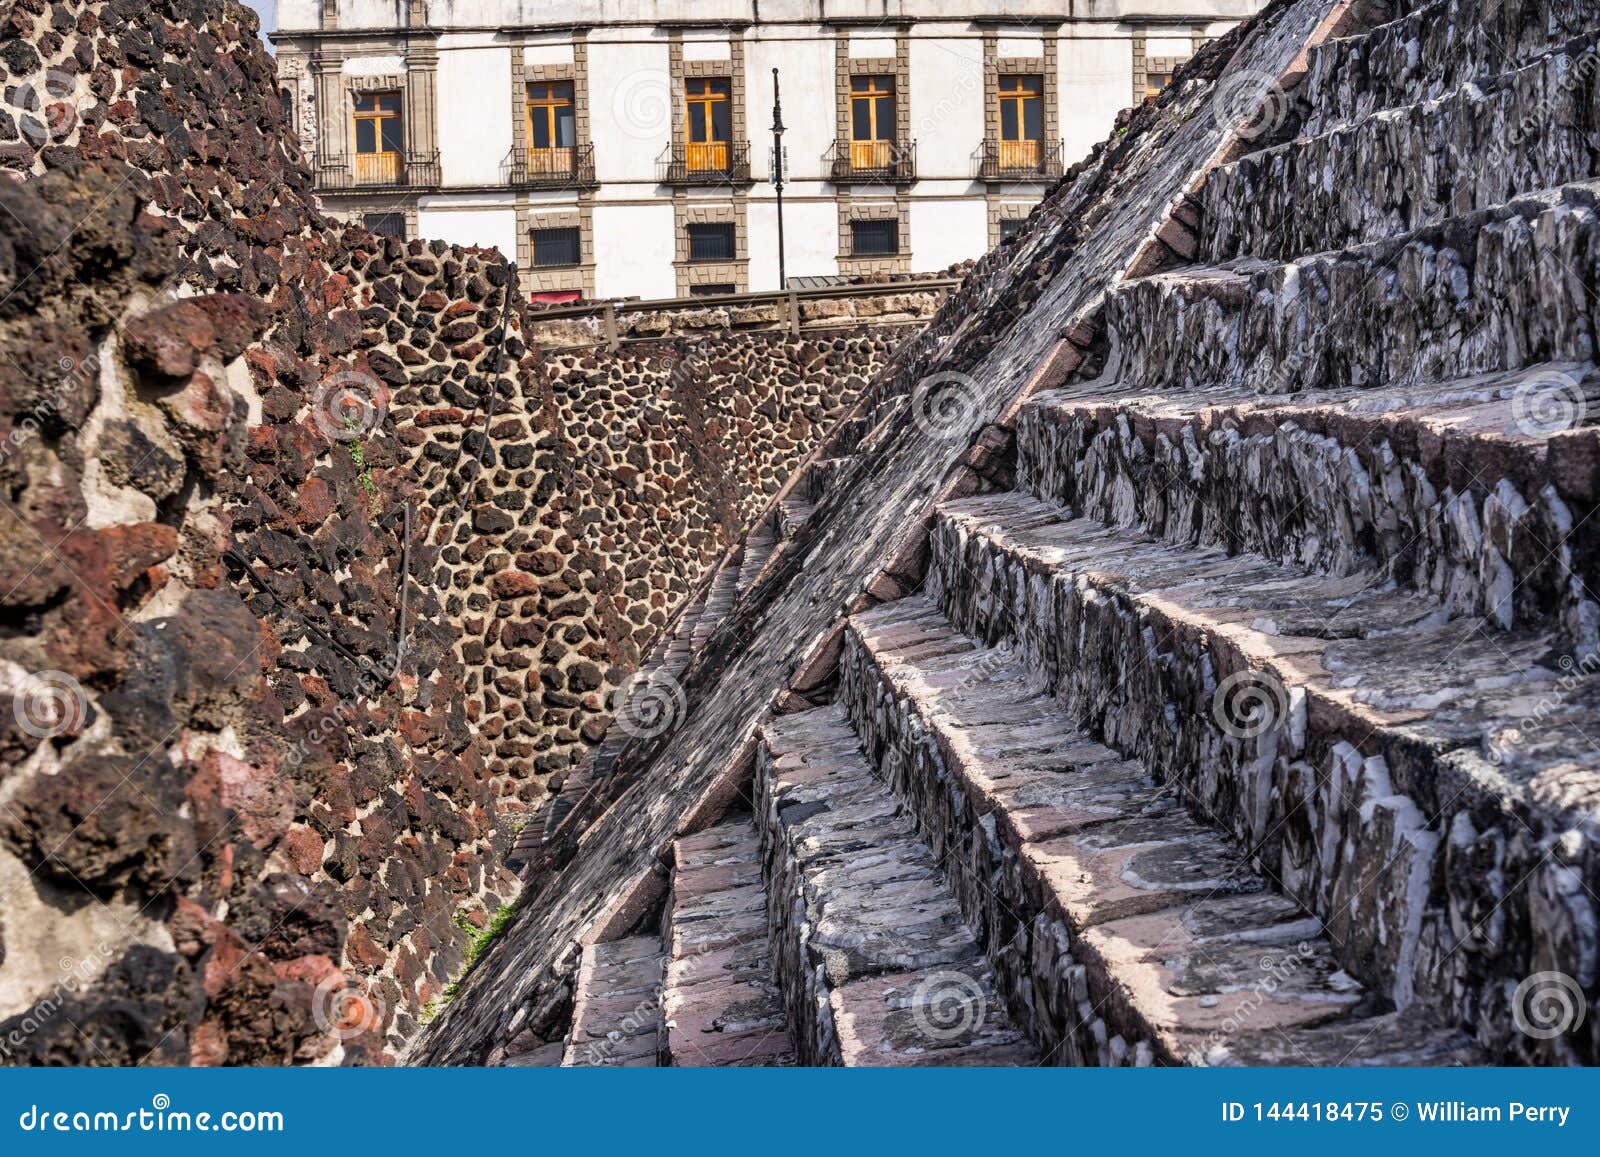 ancient aztec stone steps templo mayor mexico city mexico